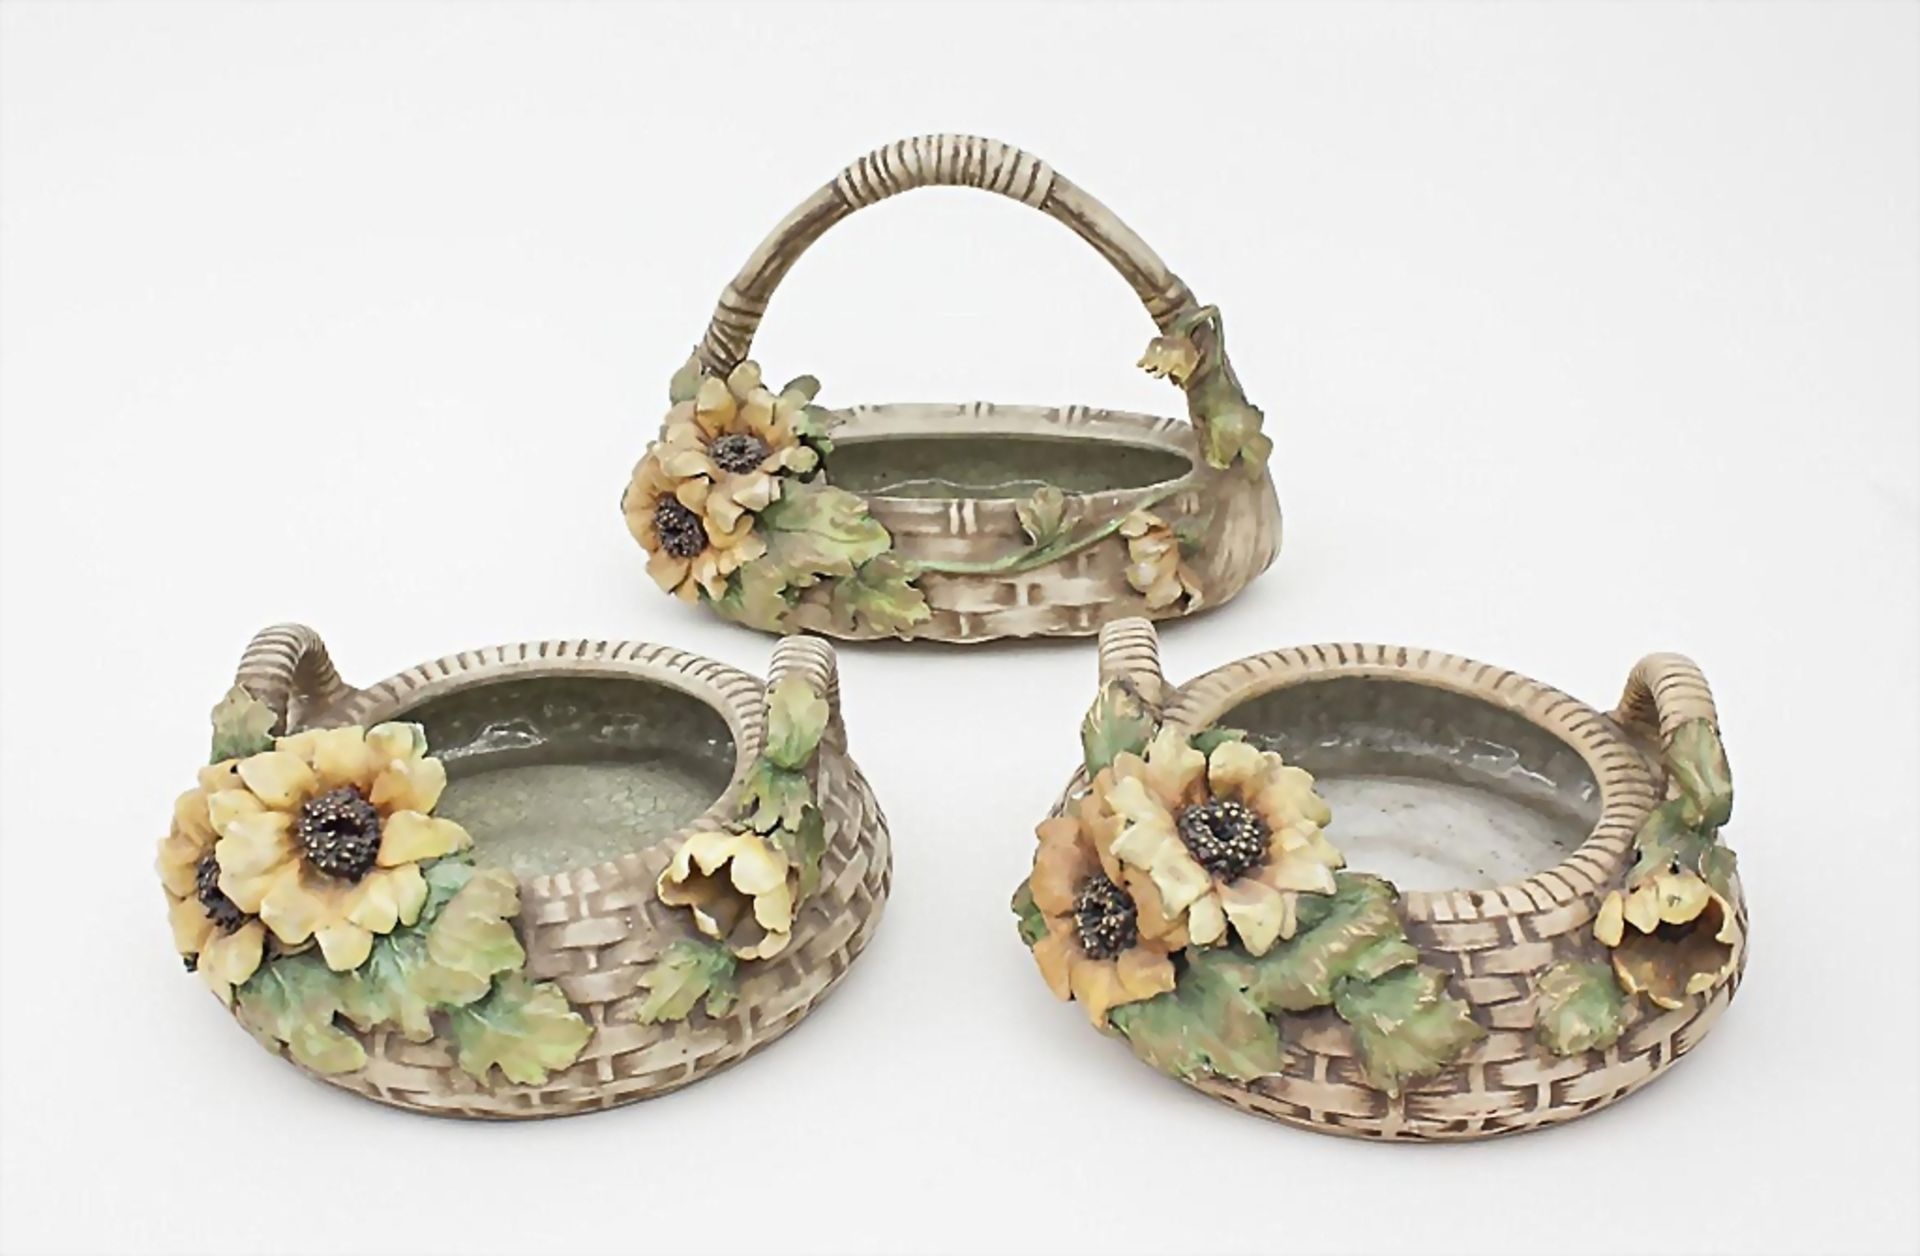 3 Jugendstil-Korbschalen mit Sonnenblumen/3 Art Nouveau Ceramic Baskets with Sunflowers, Amphora - Bild 2 aus 4